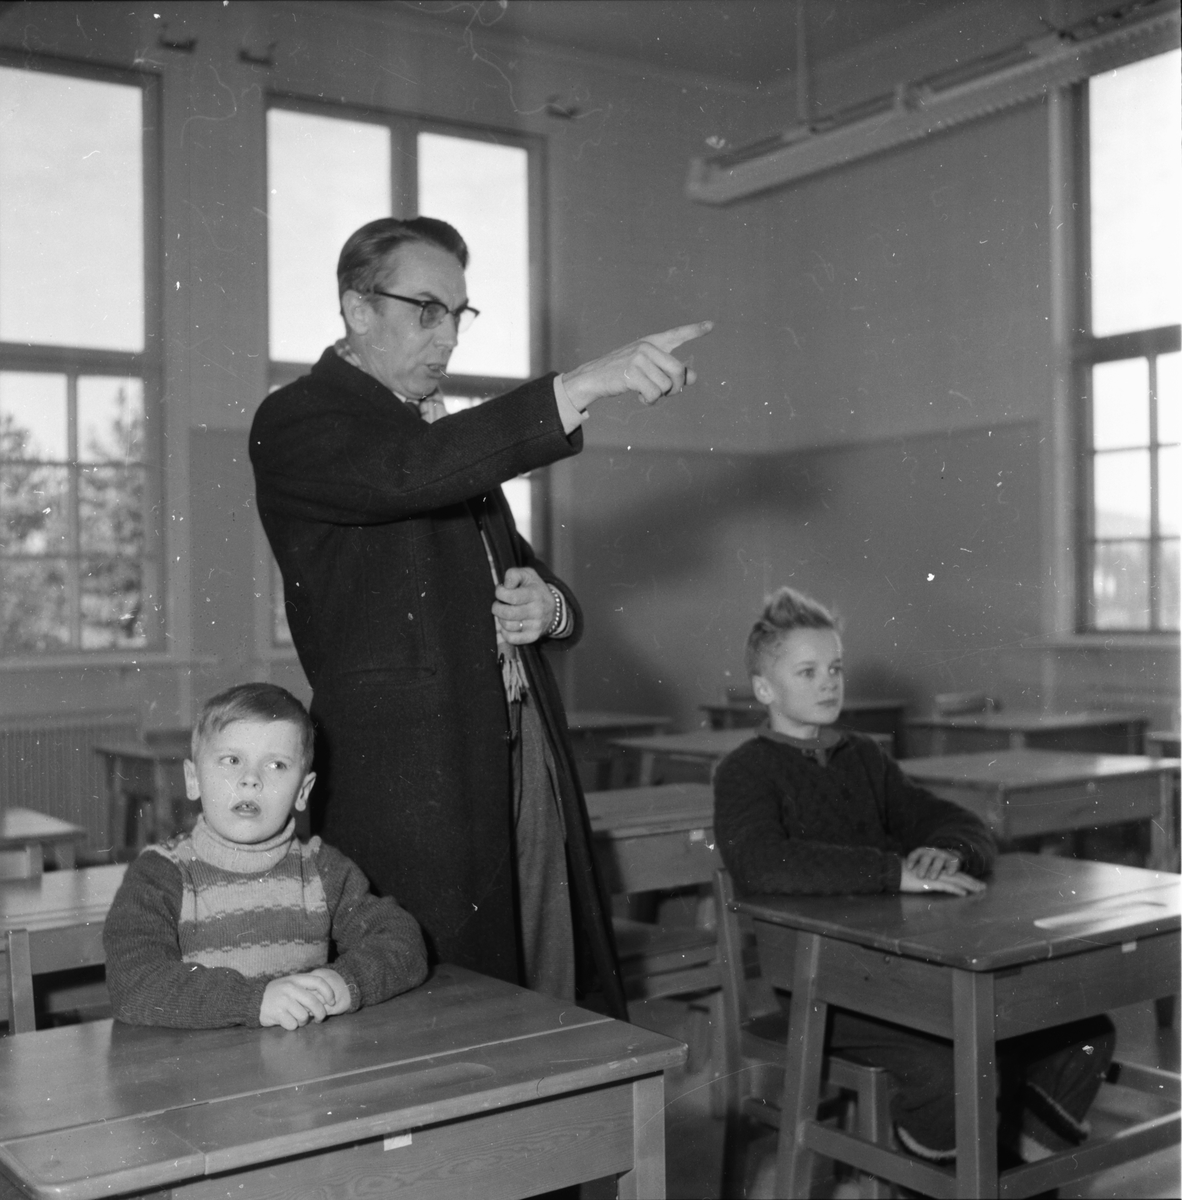 Västansjö skola.
Kilafors 10/1 1958